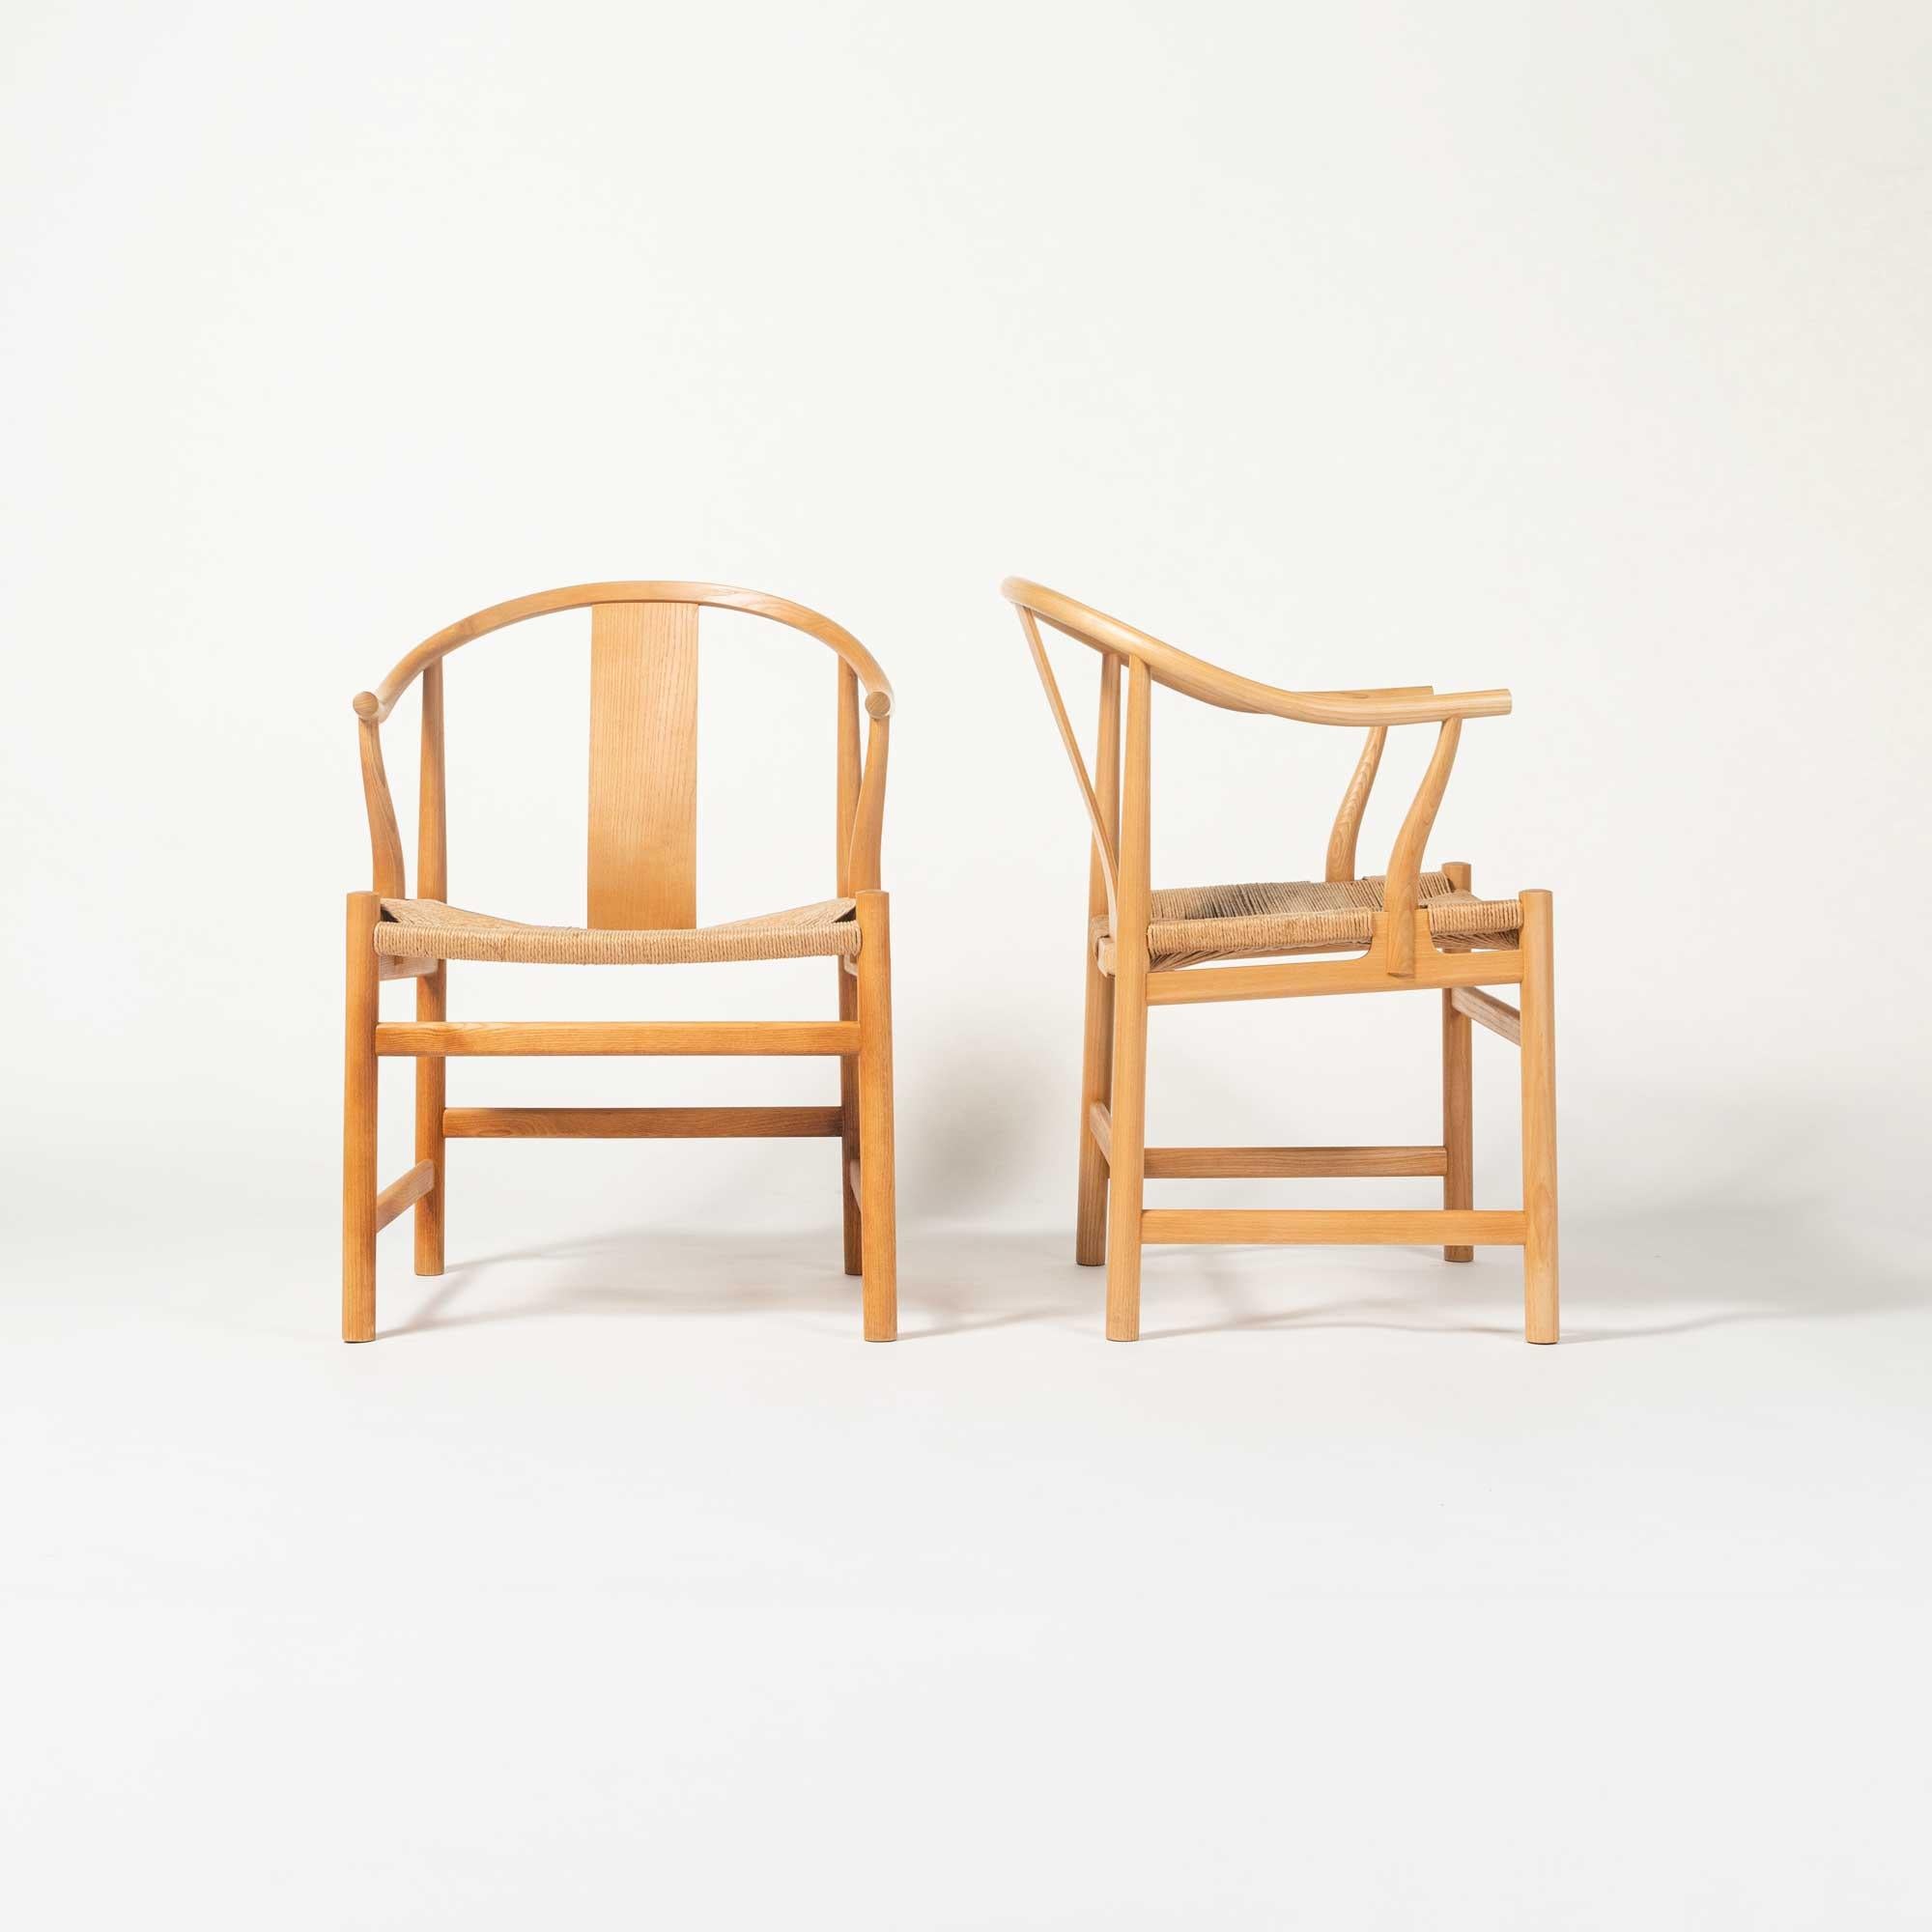 Auf der Herbstausstellung der Tischlerinnung 1943 präsentierte Wegner seine erste Version eines Stuhls, der von einem alten chinesischen Stuhl inspiriert war, den er im dänischen Museum für industrielle Kunst gesehen hatte. Seitdem sind weitere